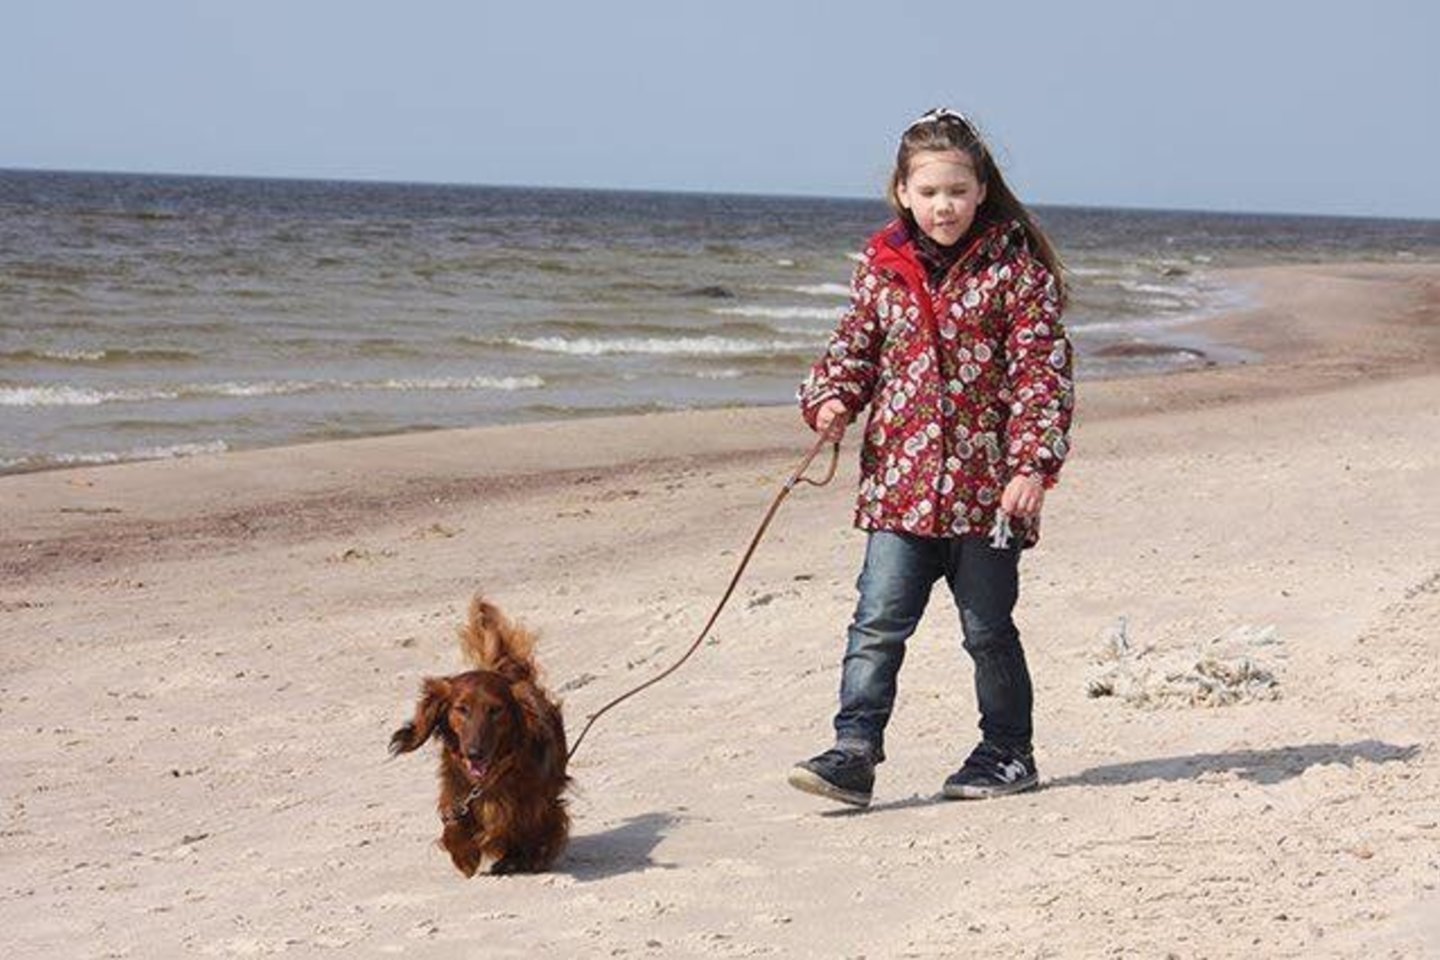  Prokuratūra atkakliai siekė nuteisti J.Jankauskienę, per avariją žuvus jos 10 metų dukrai Kotrynai.<br> Nuotr. iš šeimos archyvo